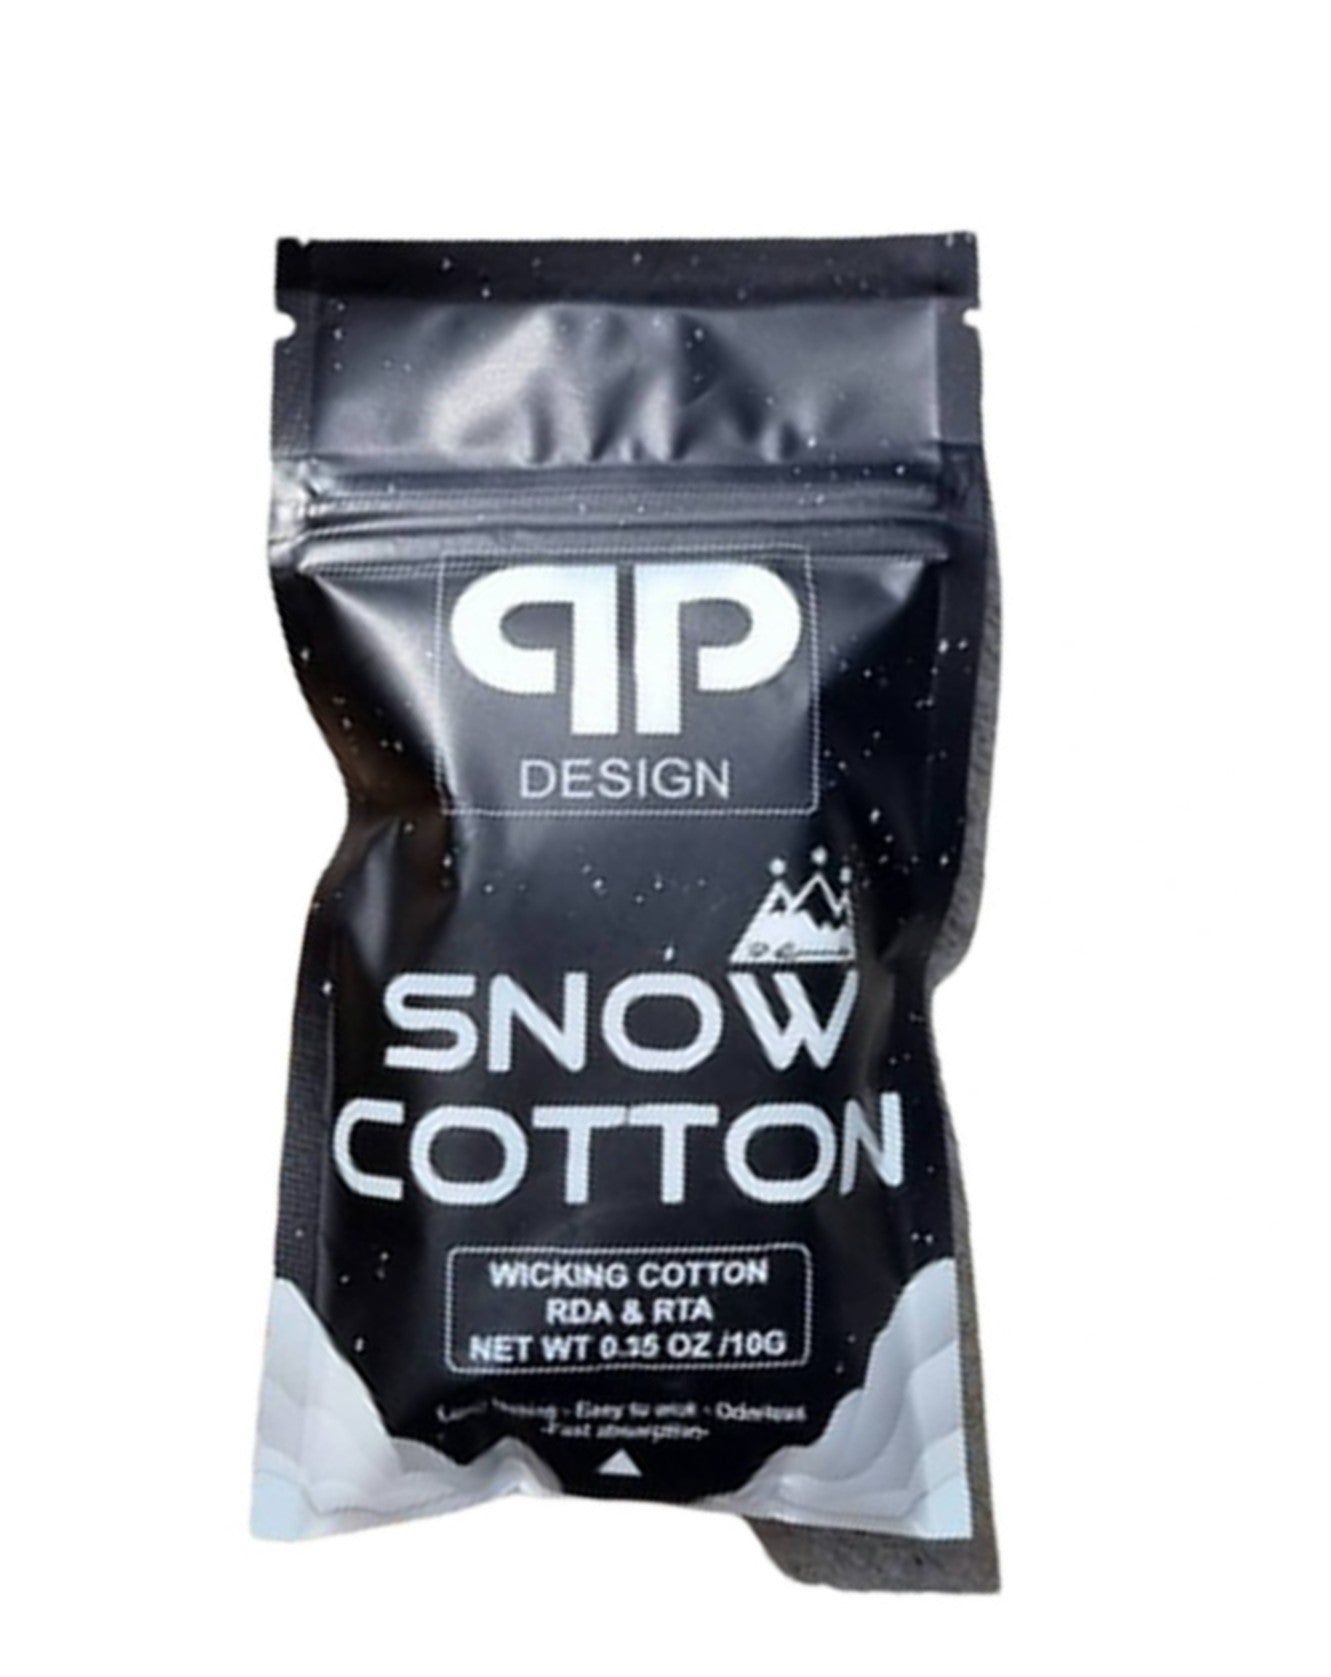 Snow Cotton by QP Design